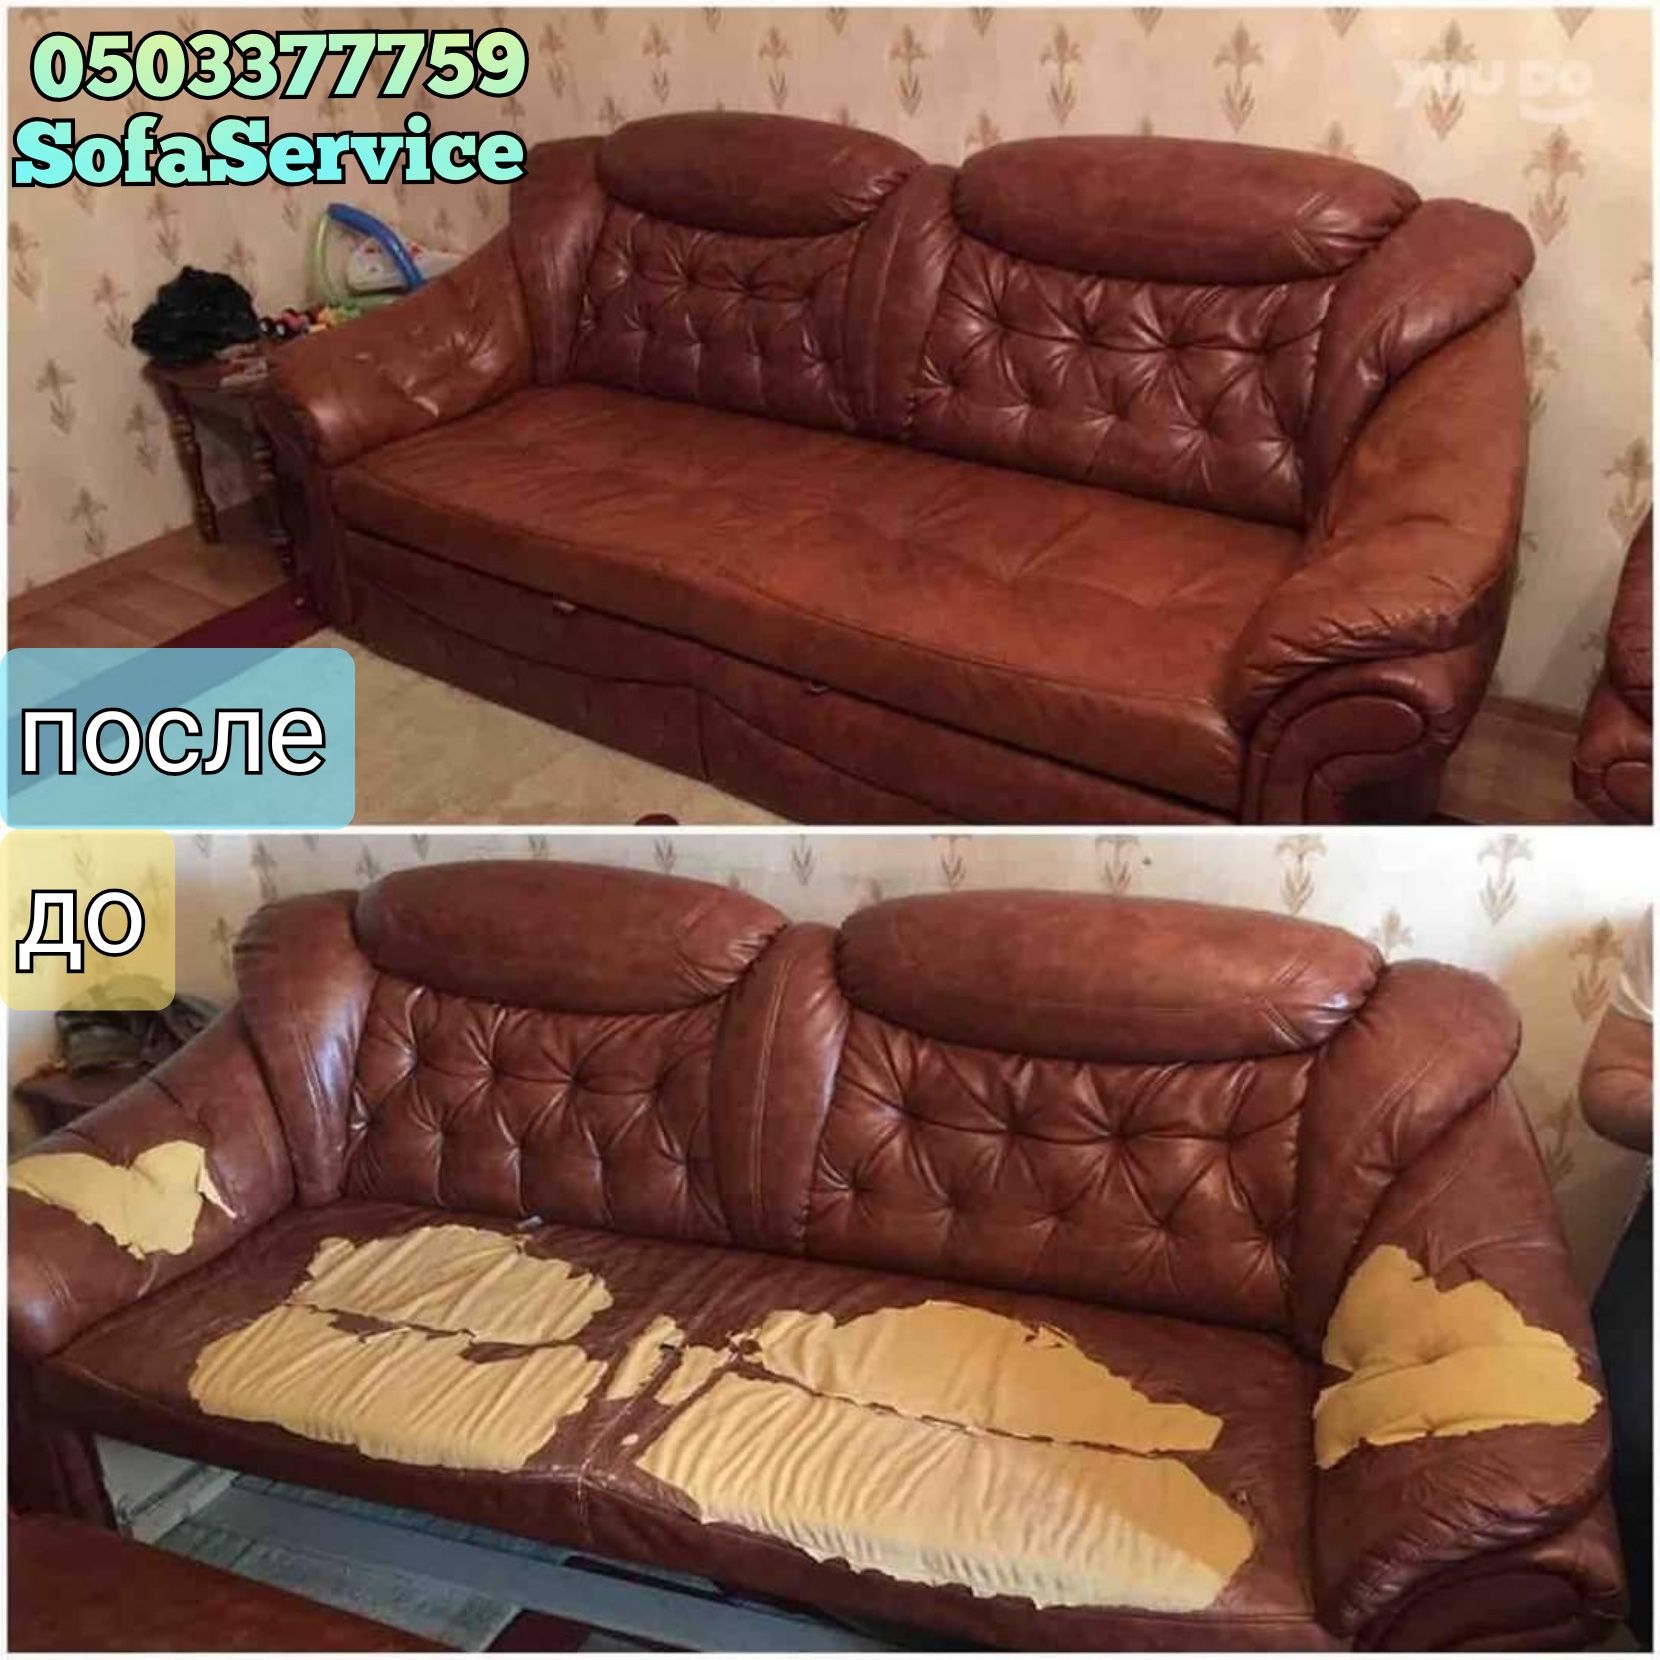 Перетяжка дивана, стульев, кровати, кресла, реставрация мягкой мебели